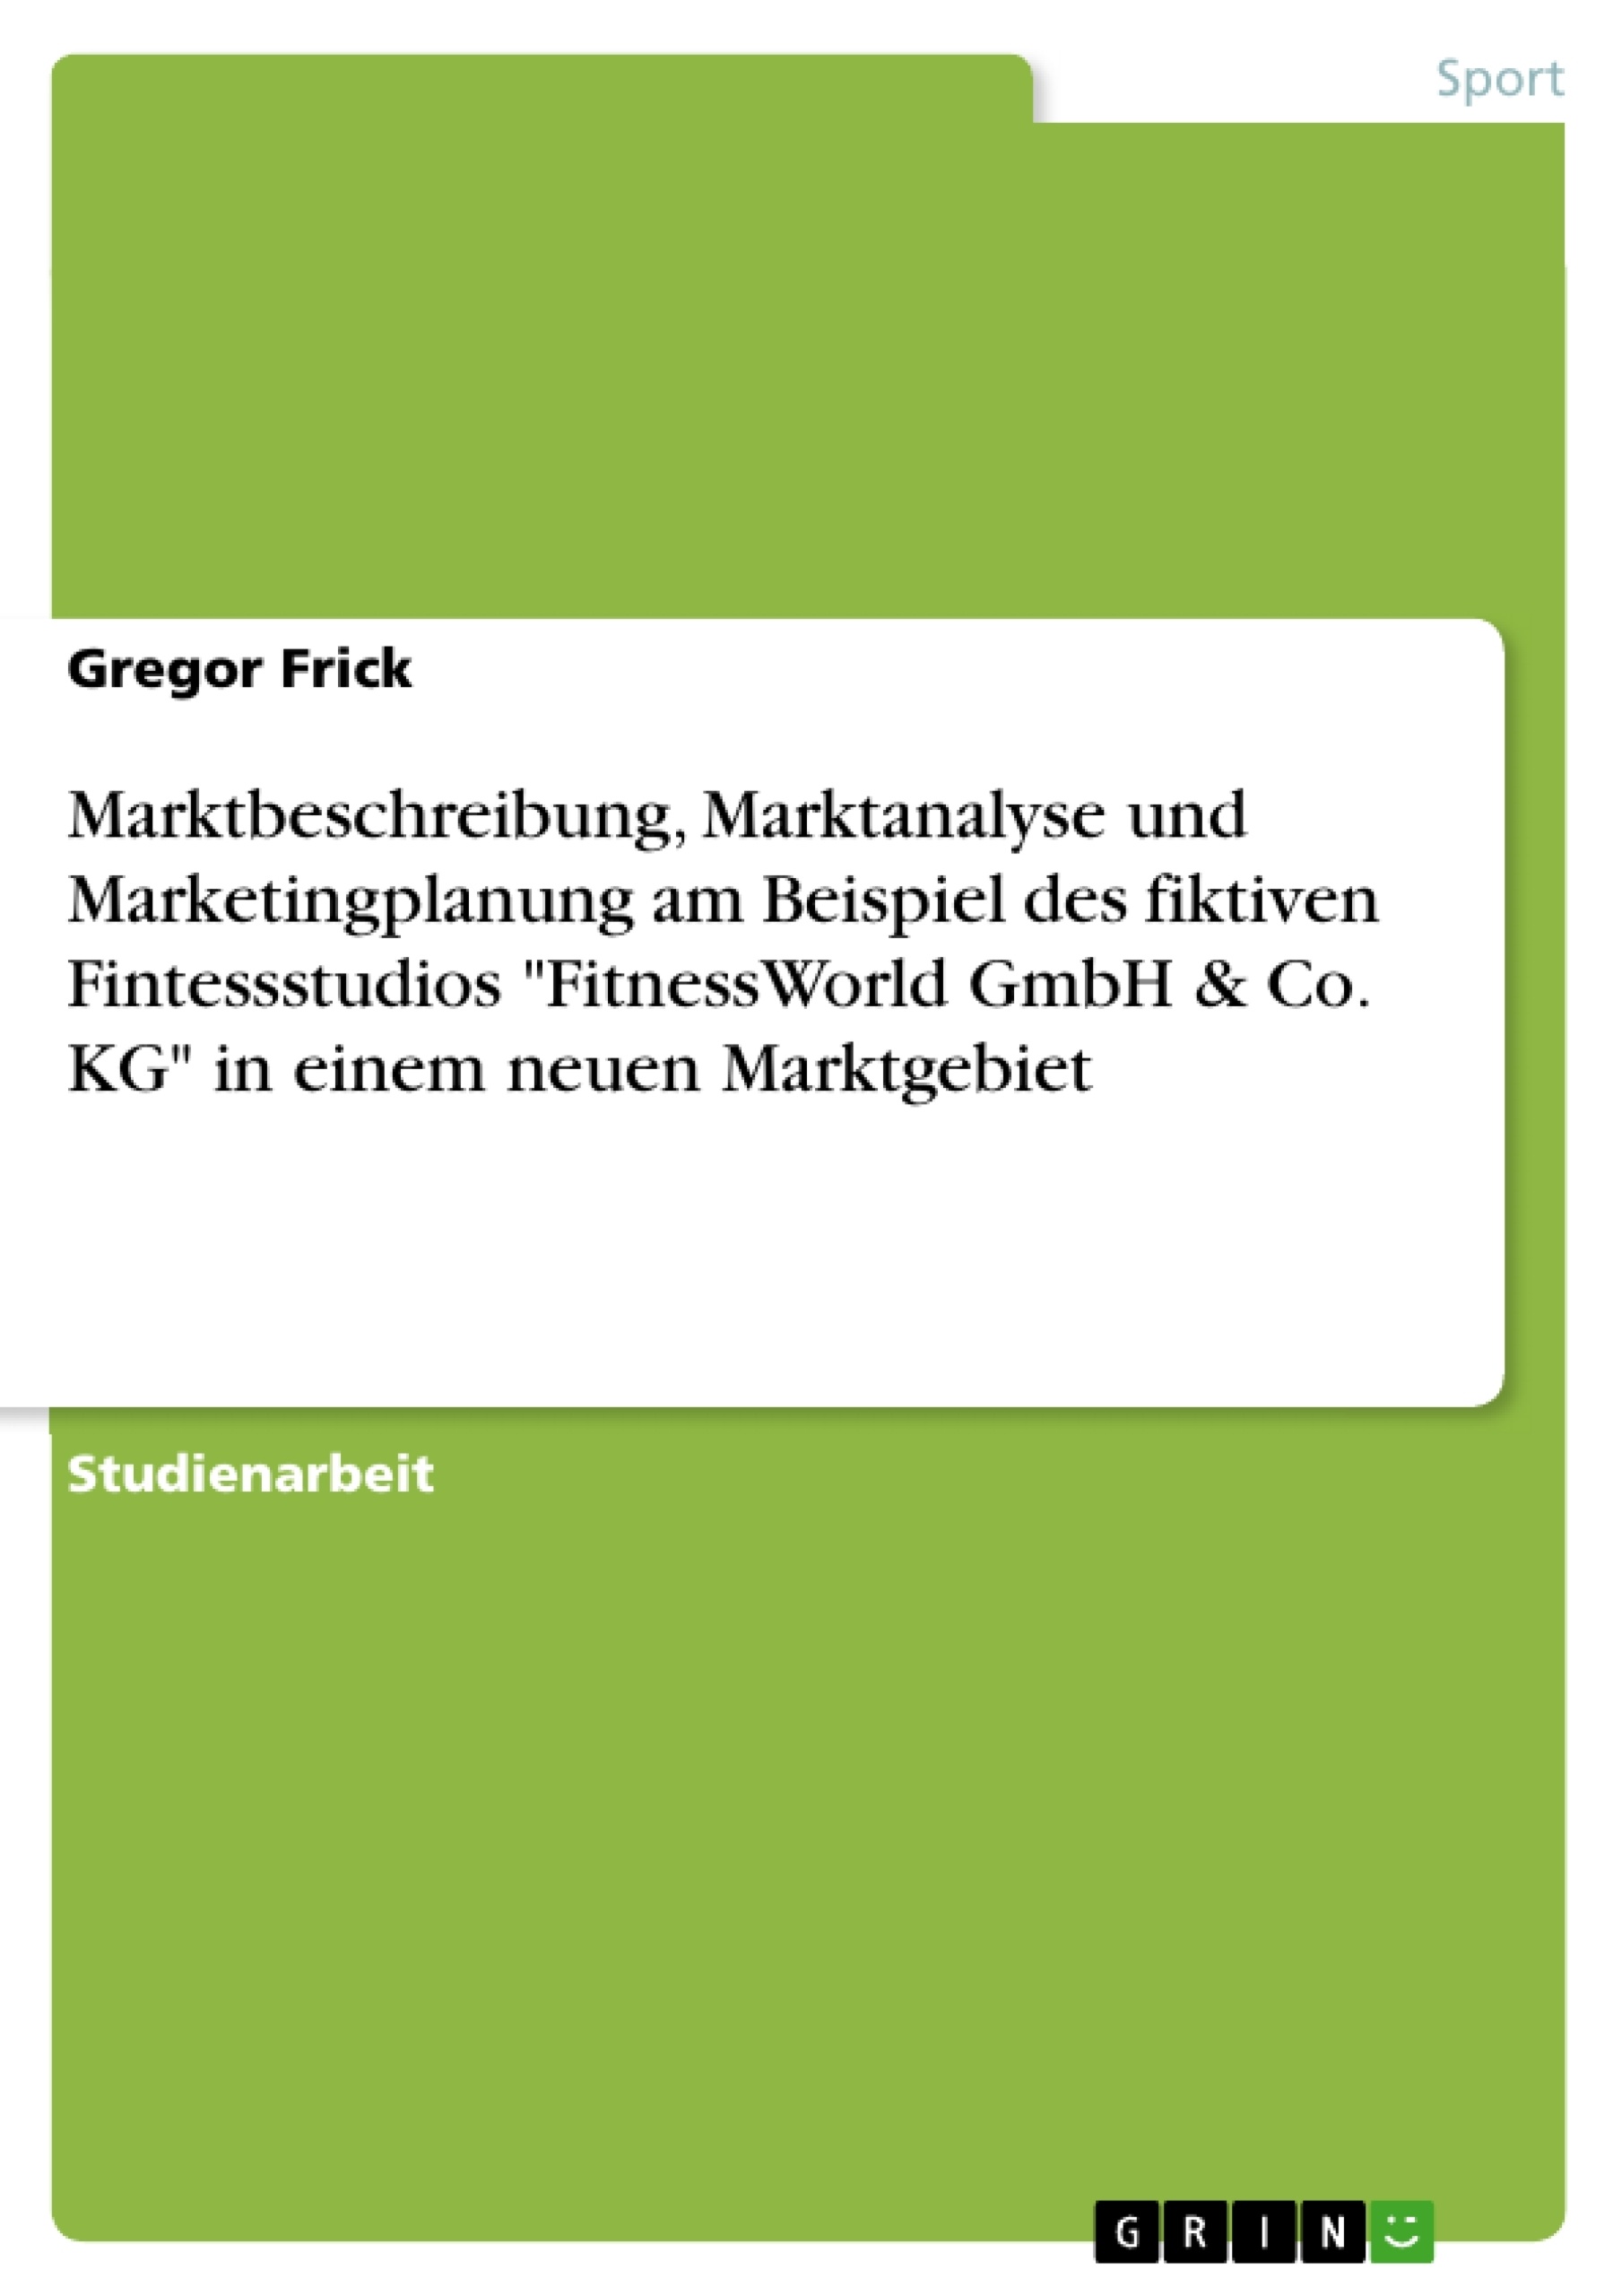 Título: Marktbeschreibung, Marktanalyse und Marketingplanung am Beispiel des fiktiven Fintessstudios "FitnessWorld GmbH & Co. KG" in einem neuen Marktgebiet